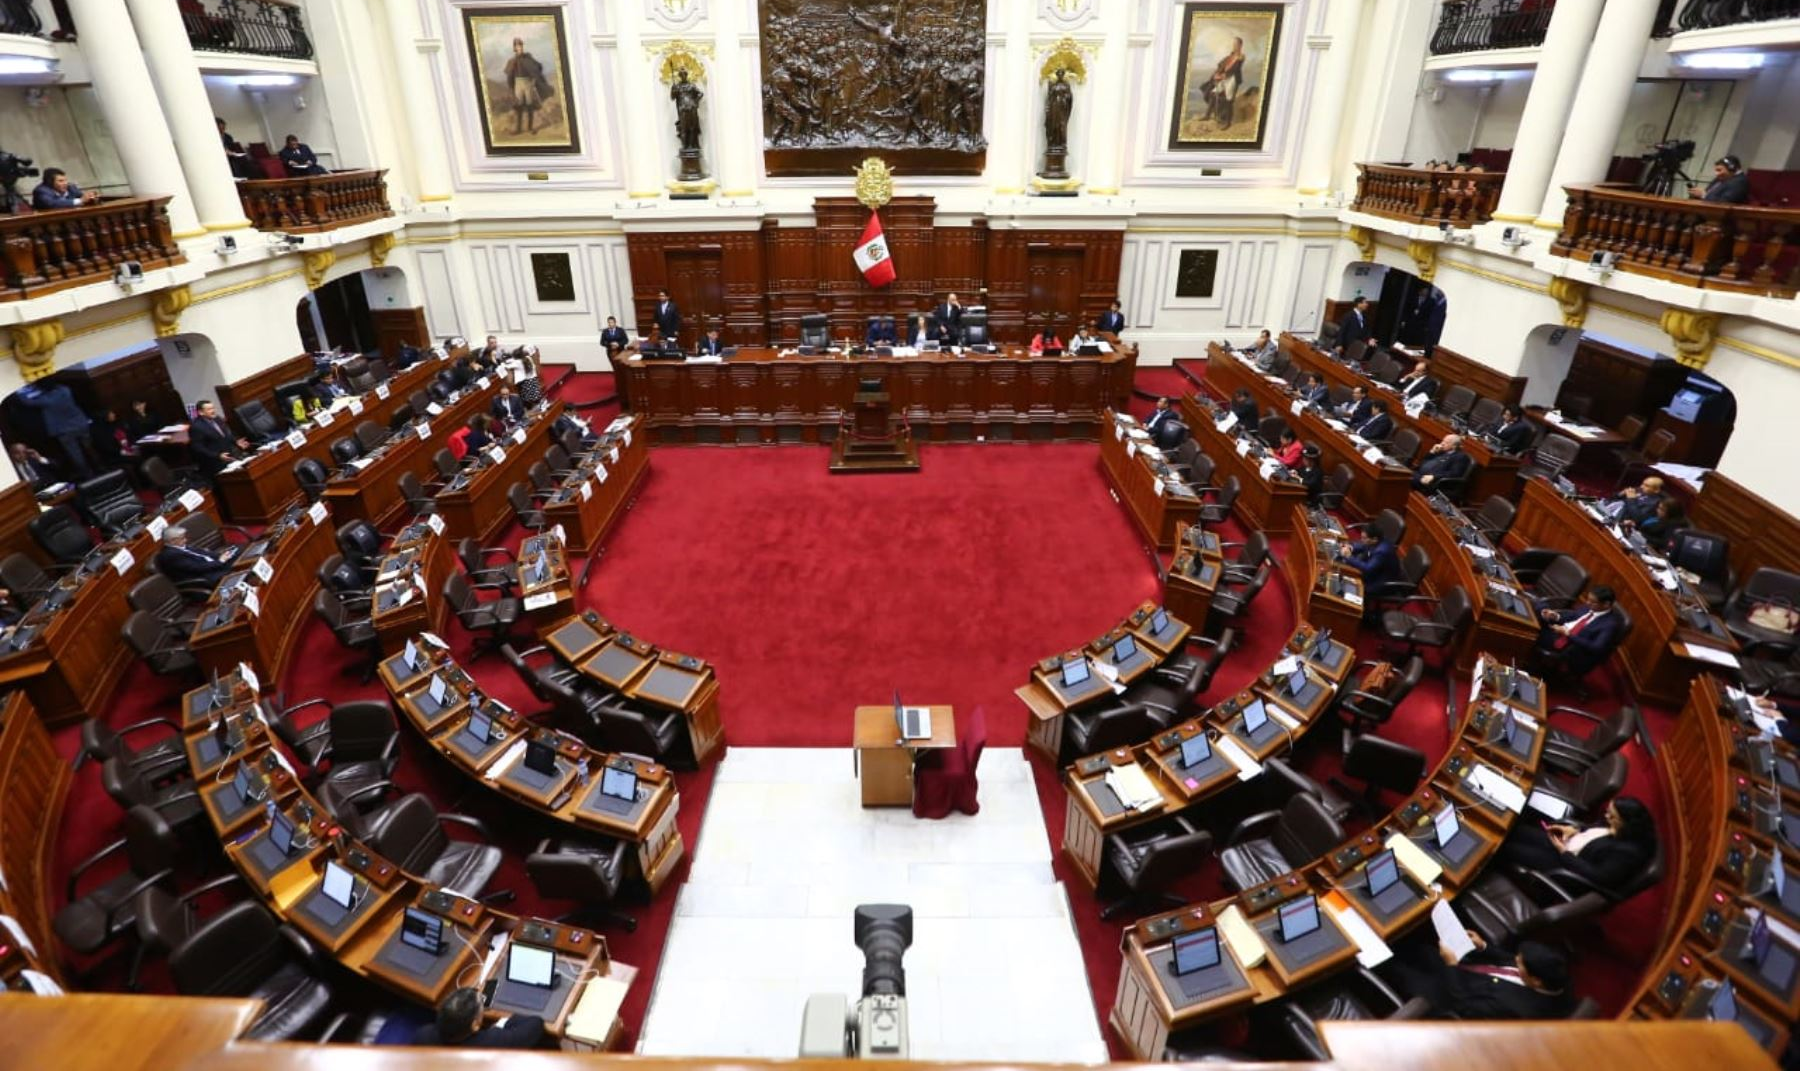 Resultados do pleito ainda indicam a formação de 10 bancadas,e a chegada de partidos como a Frente Popular Agrícola e a União pelo Peru